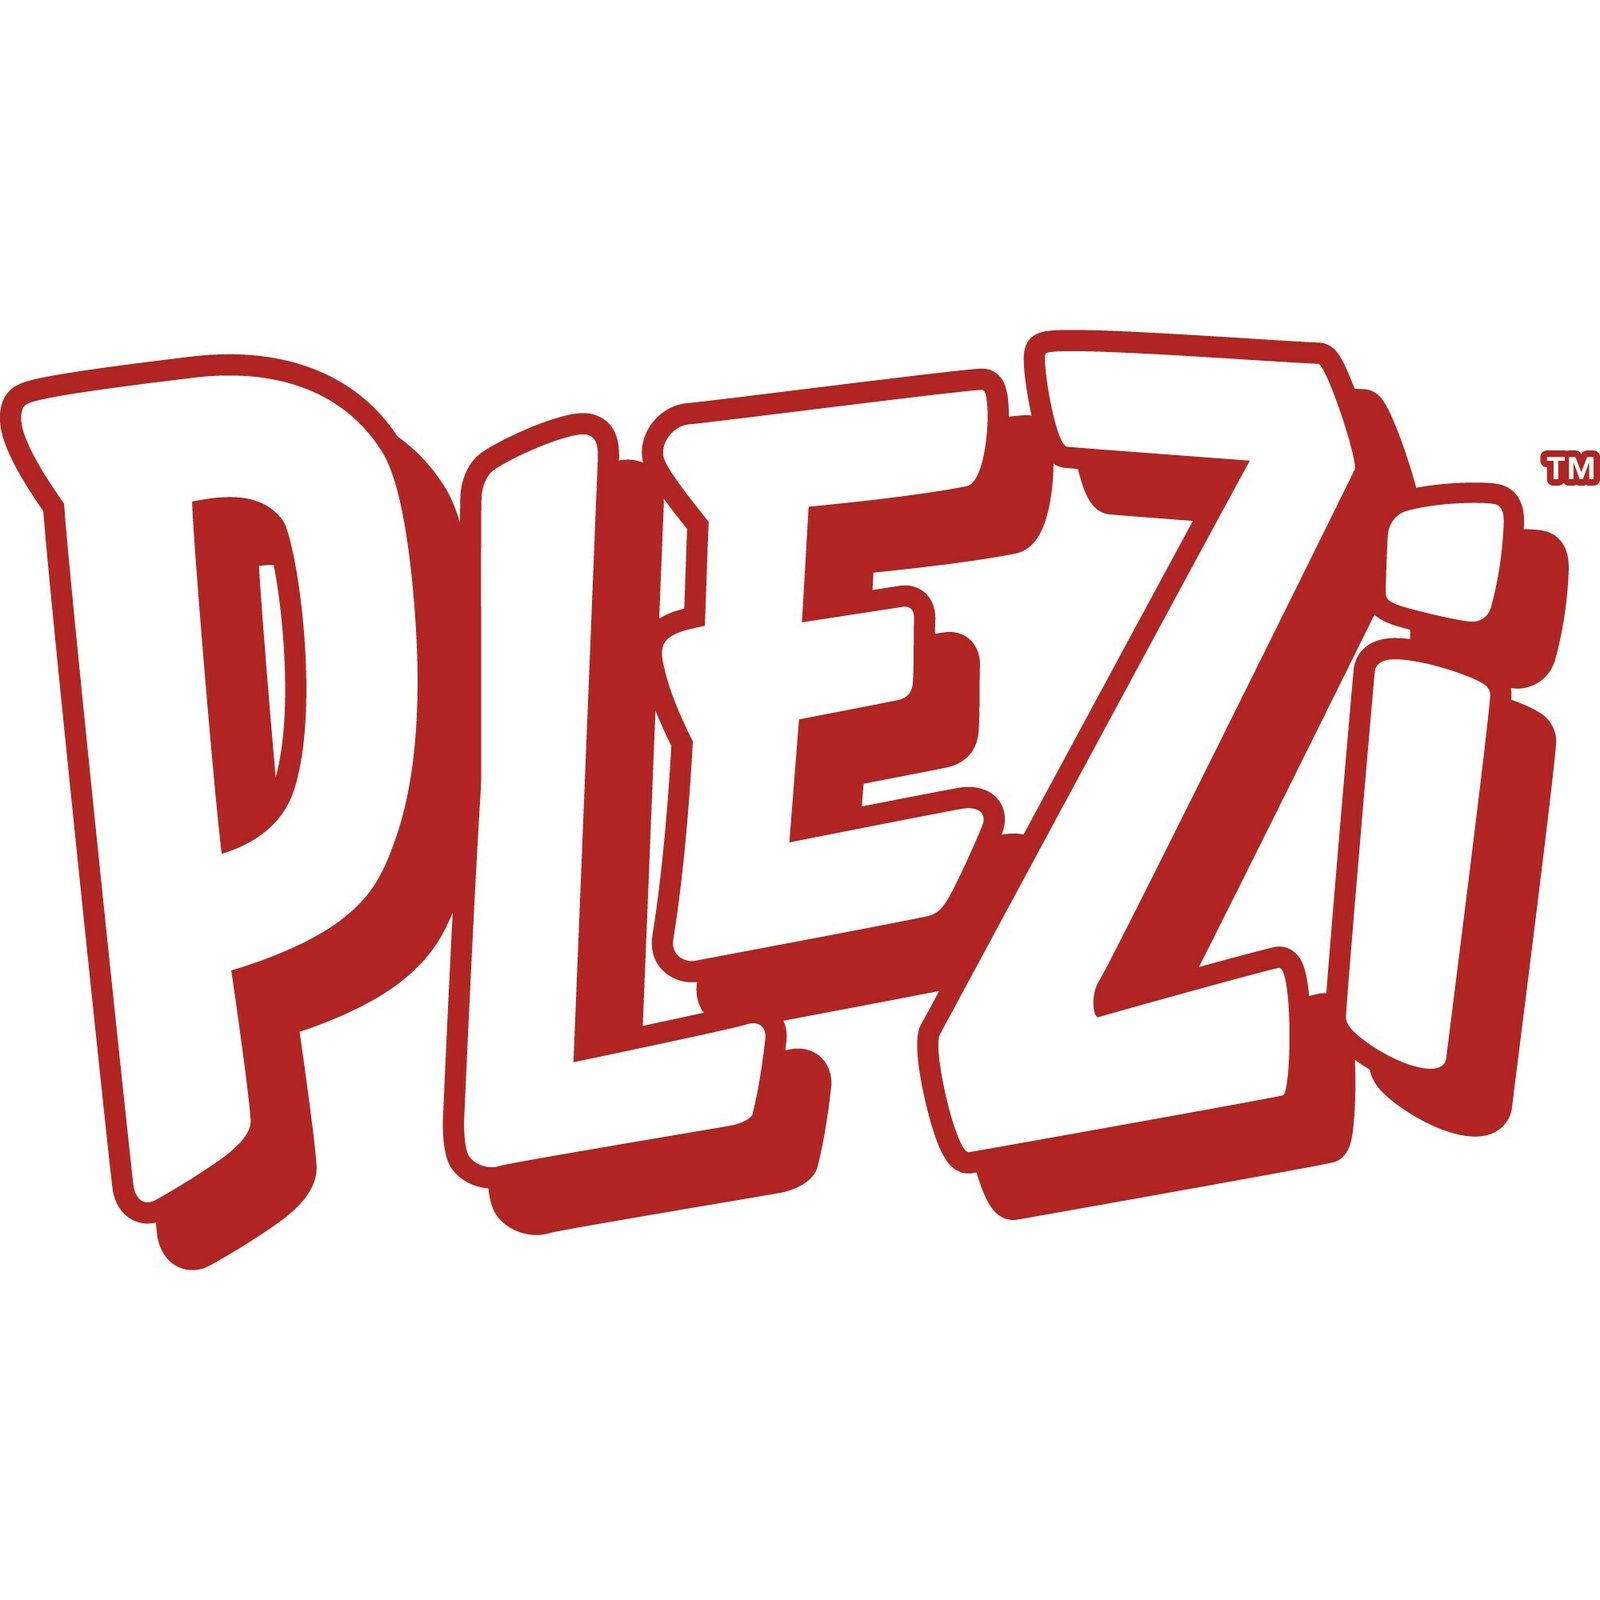 PLEZi Nutrition launches PLEZi FiZZ fruit drink